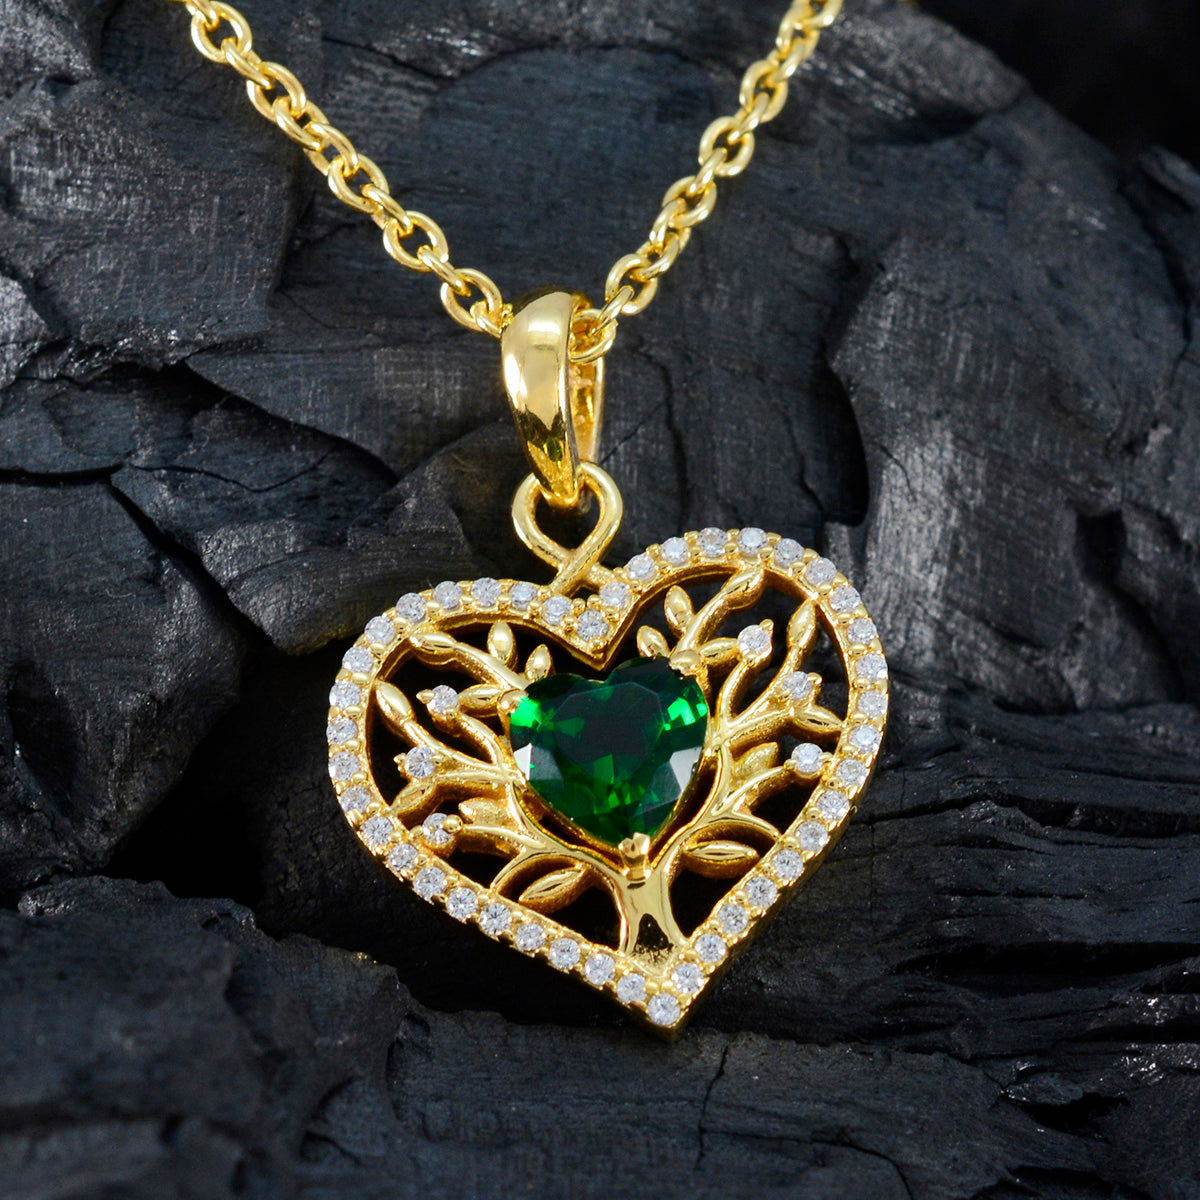 Riyo mooie edelstenen hart gefacetteerde groene smaragd cz massief zilveren hanger cadeau voor bruiloft